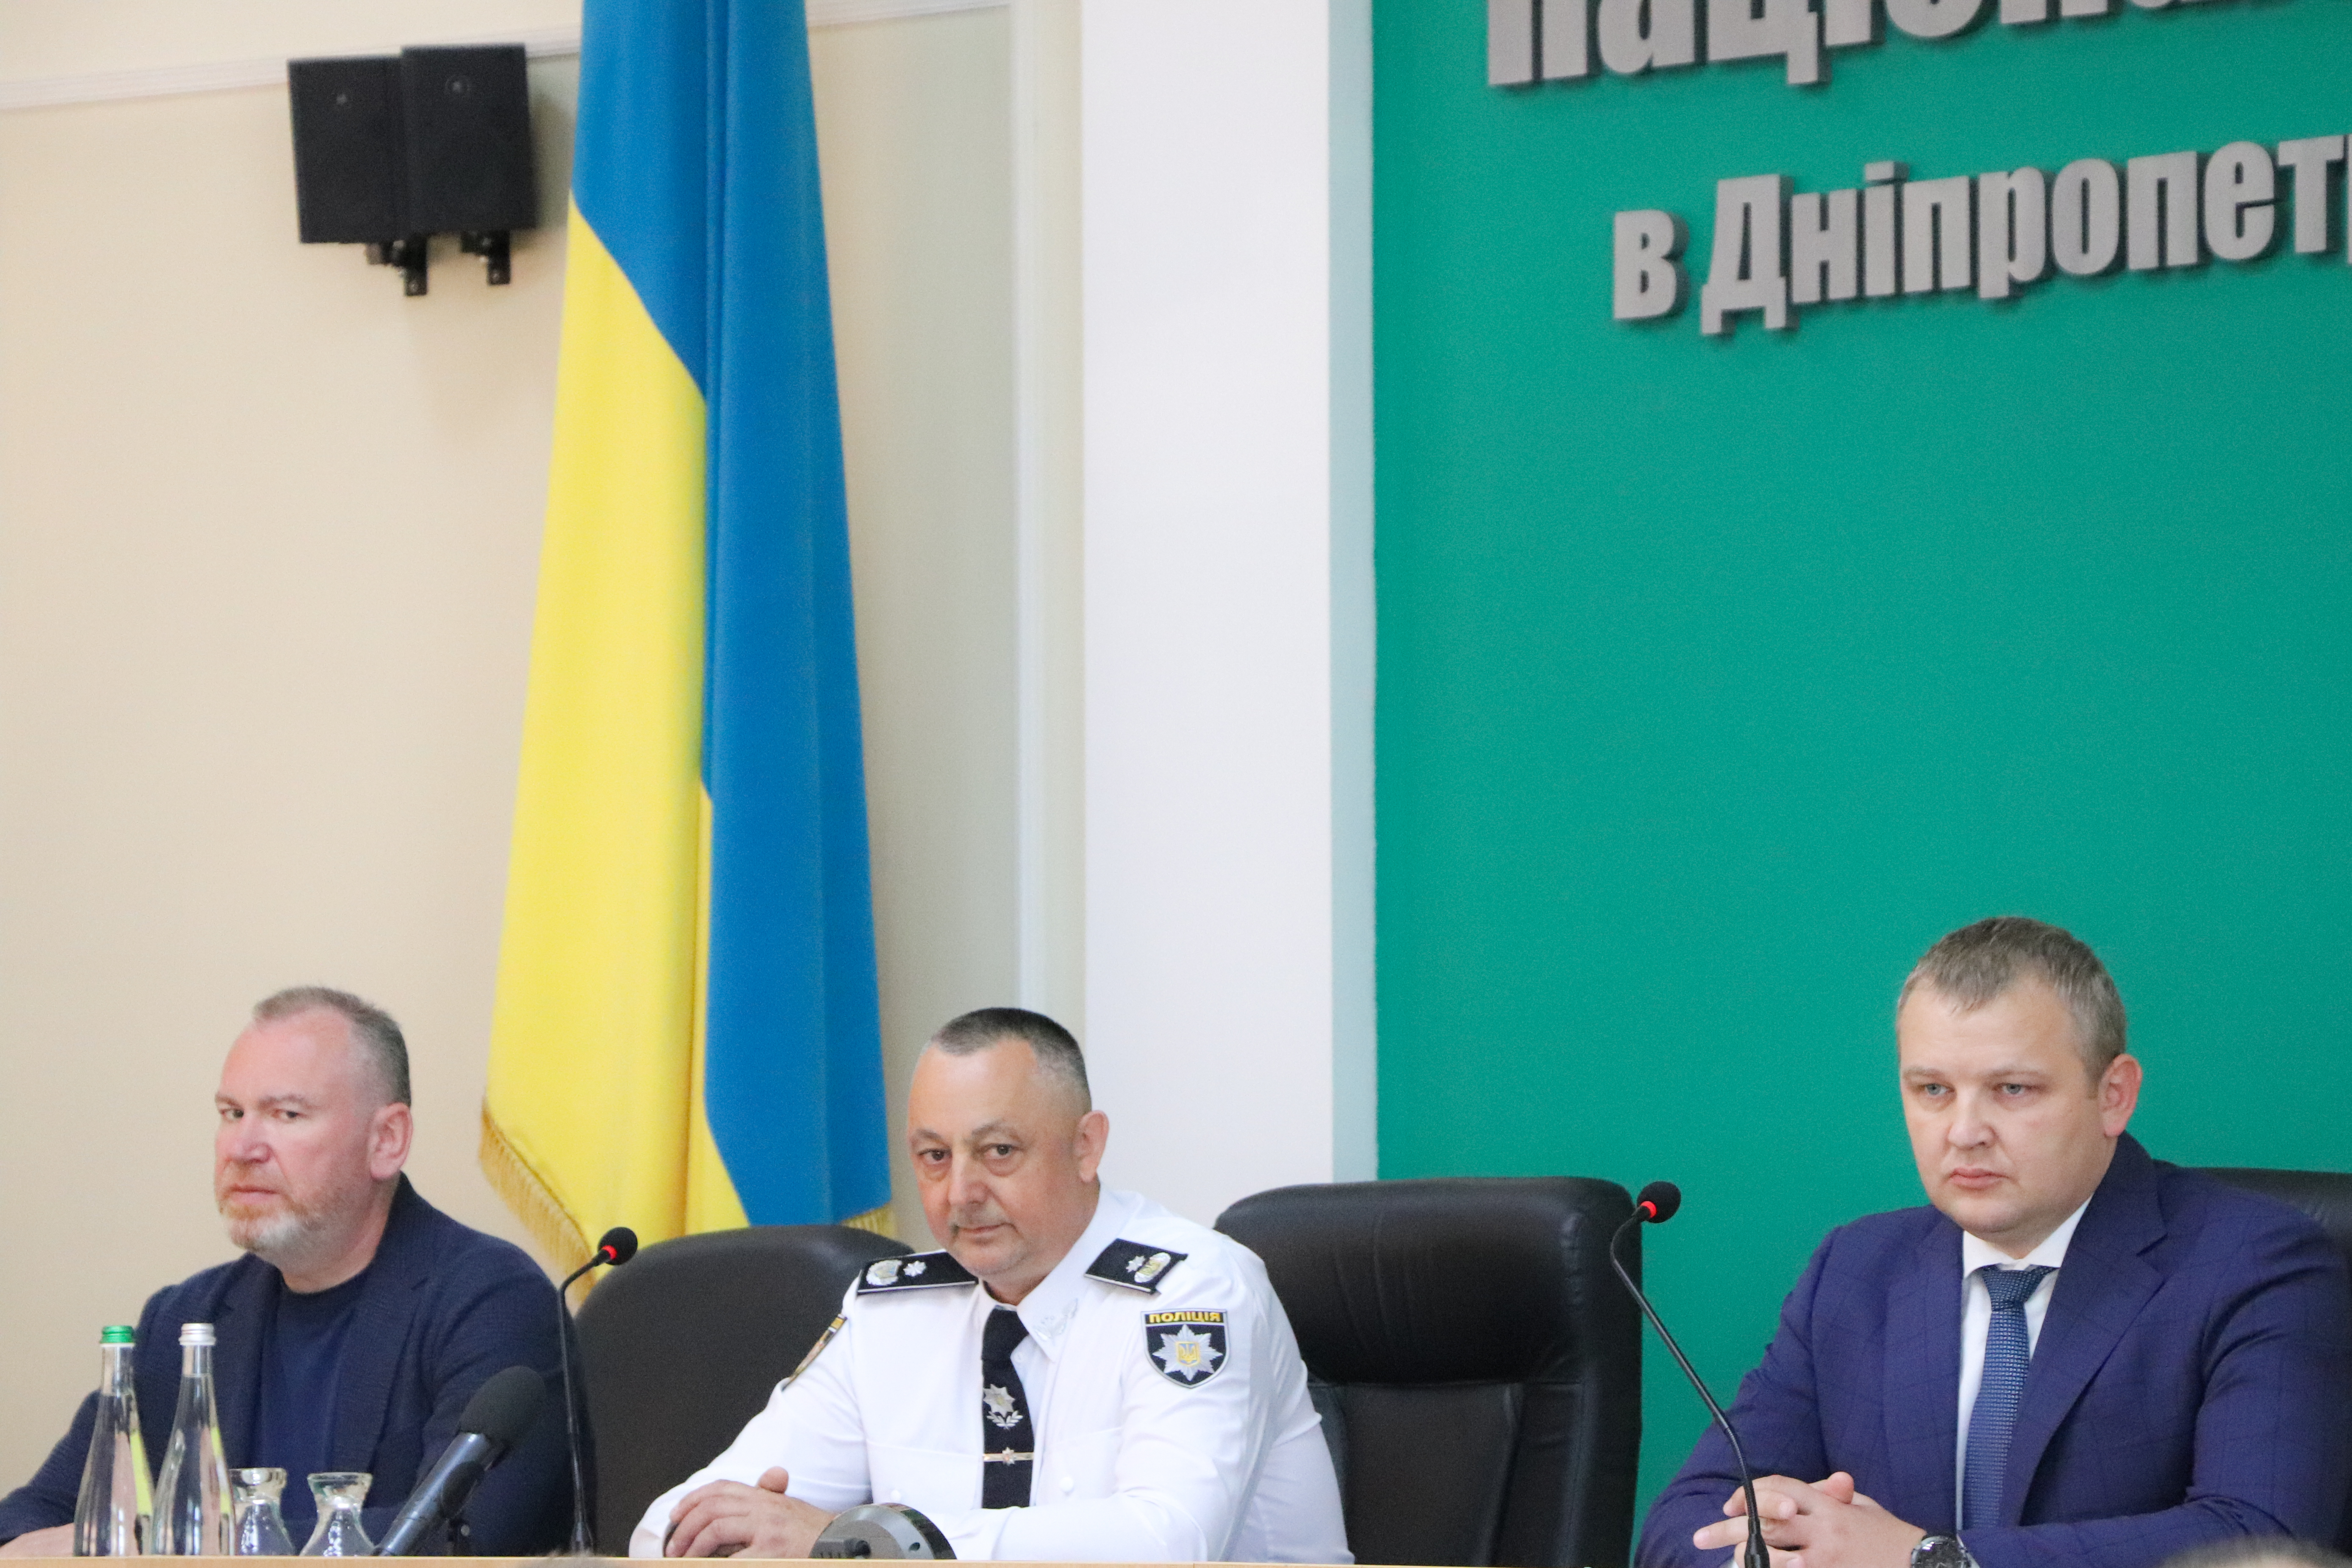 У Дніпропетровської обласної ради налагоджена співпраця із поліцією: Микола Лукашук відзначив важку роботу поліцейських